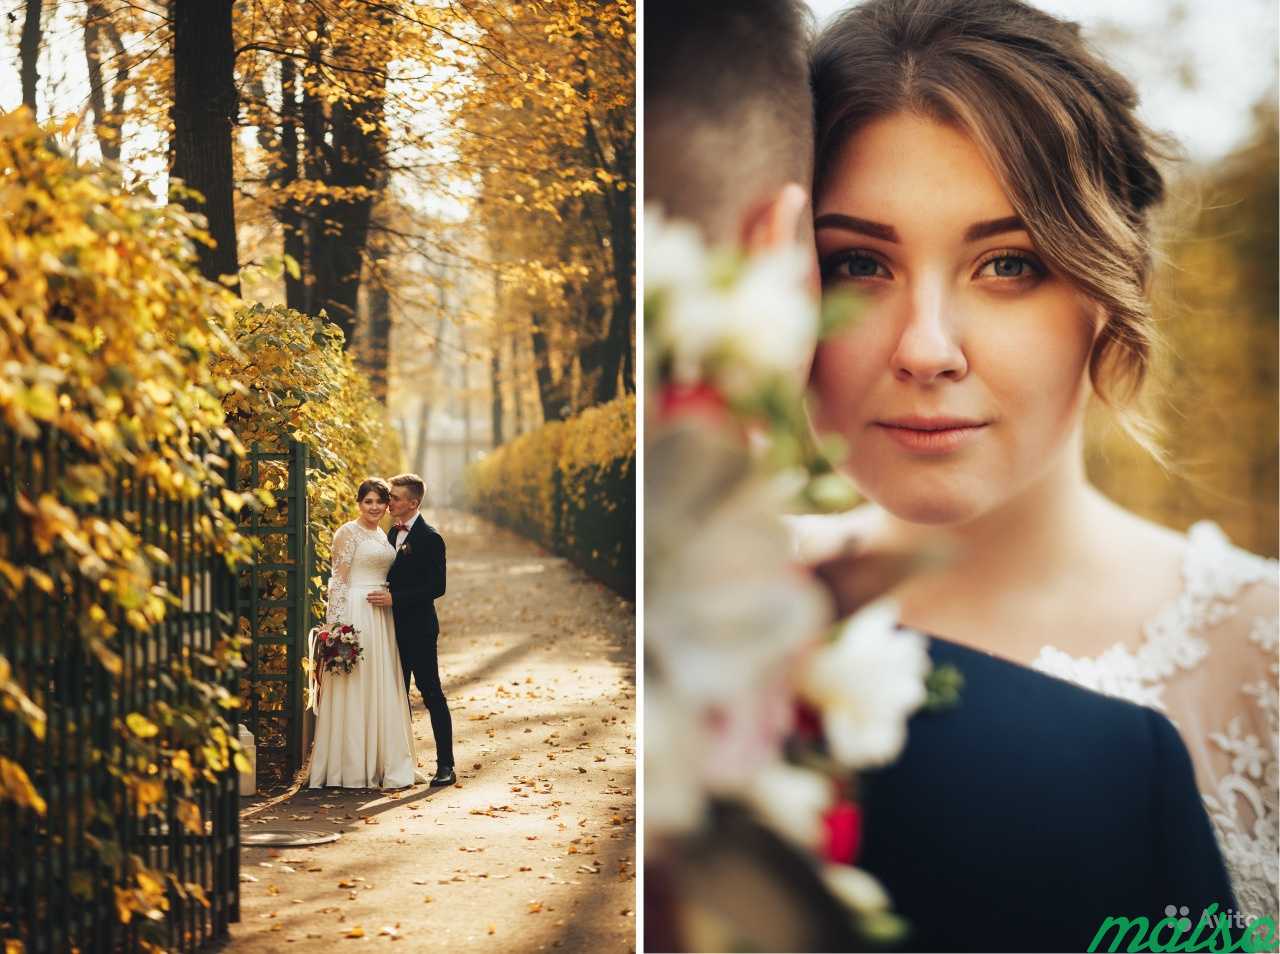 Свадебный фотограф, на свадьбу, венчание в загс в Санкт-Петербурге. Фото 2